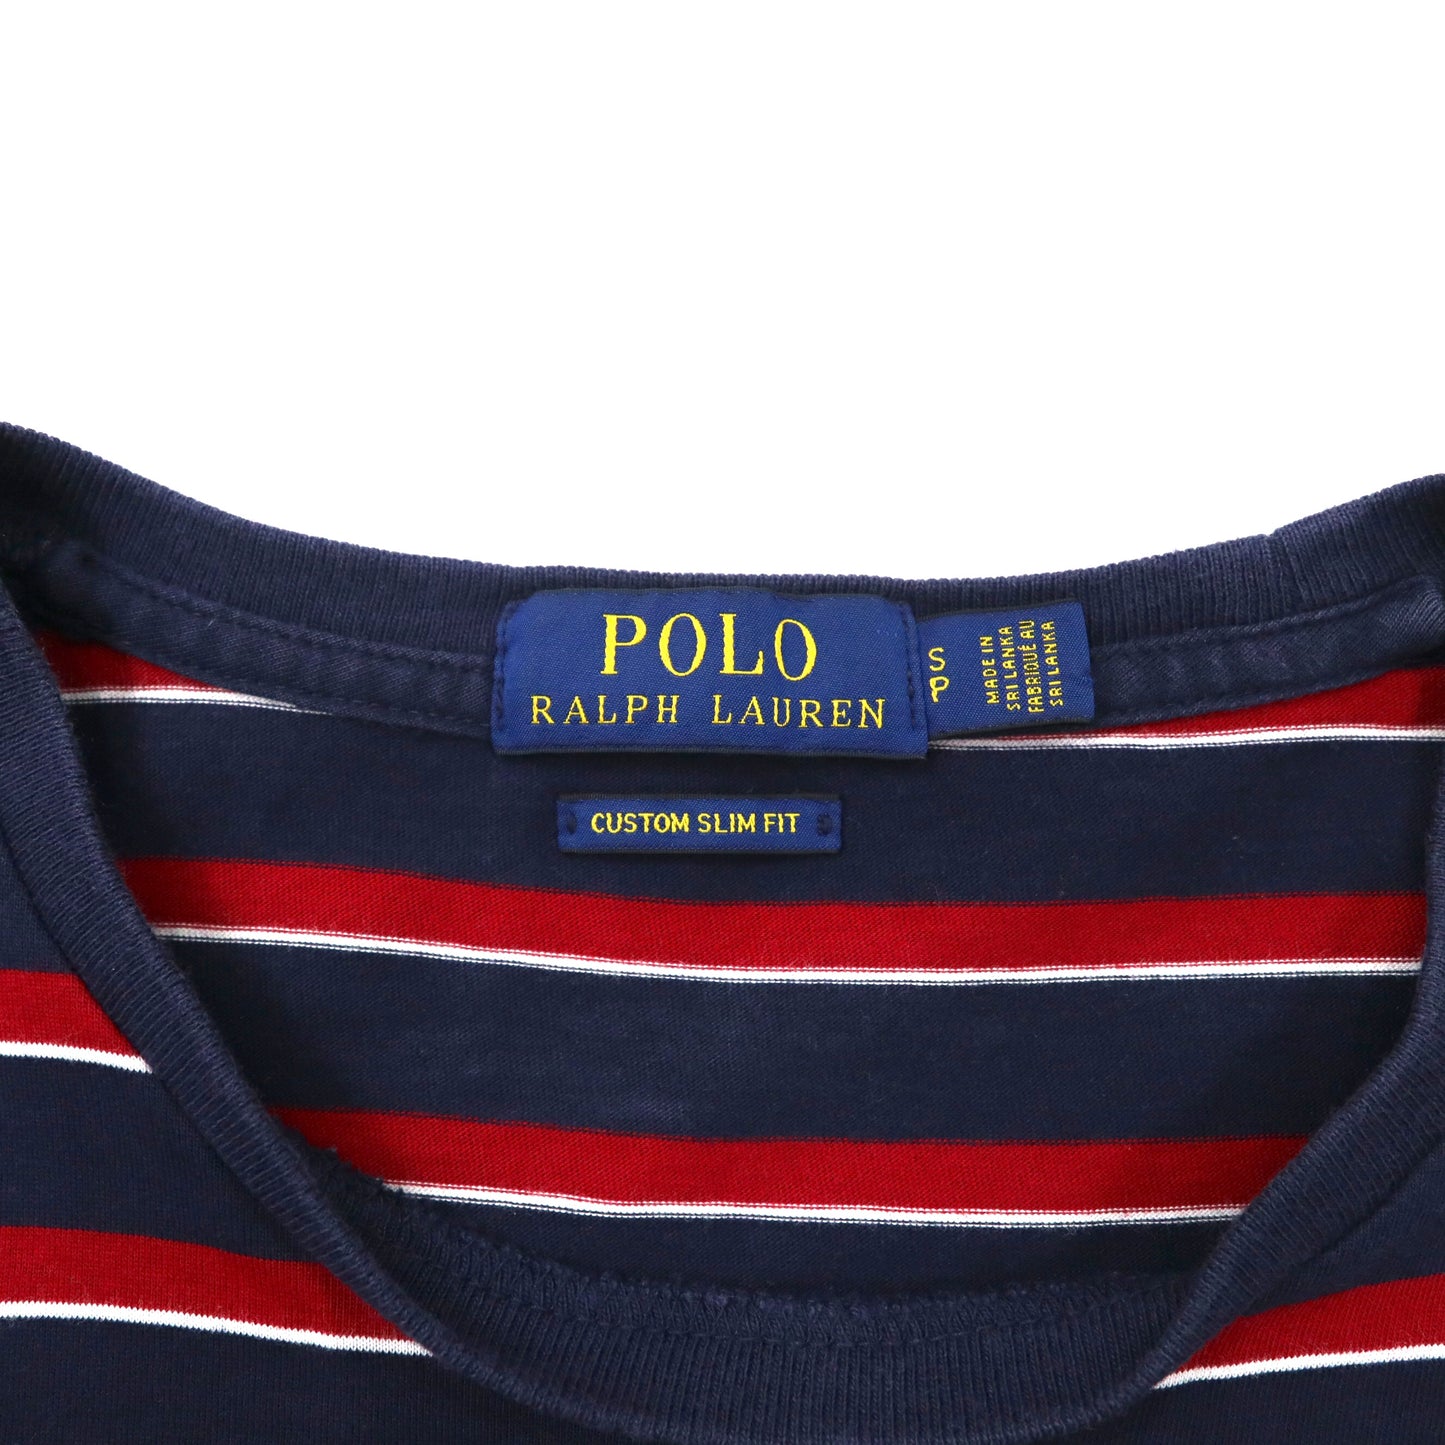 POLO RALPH LAUREN マルチボーダー ポケットTシャツ S マルチカラー コットン RLFC ロゴ刺繍 スリランカ製